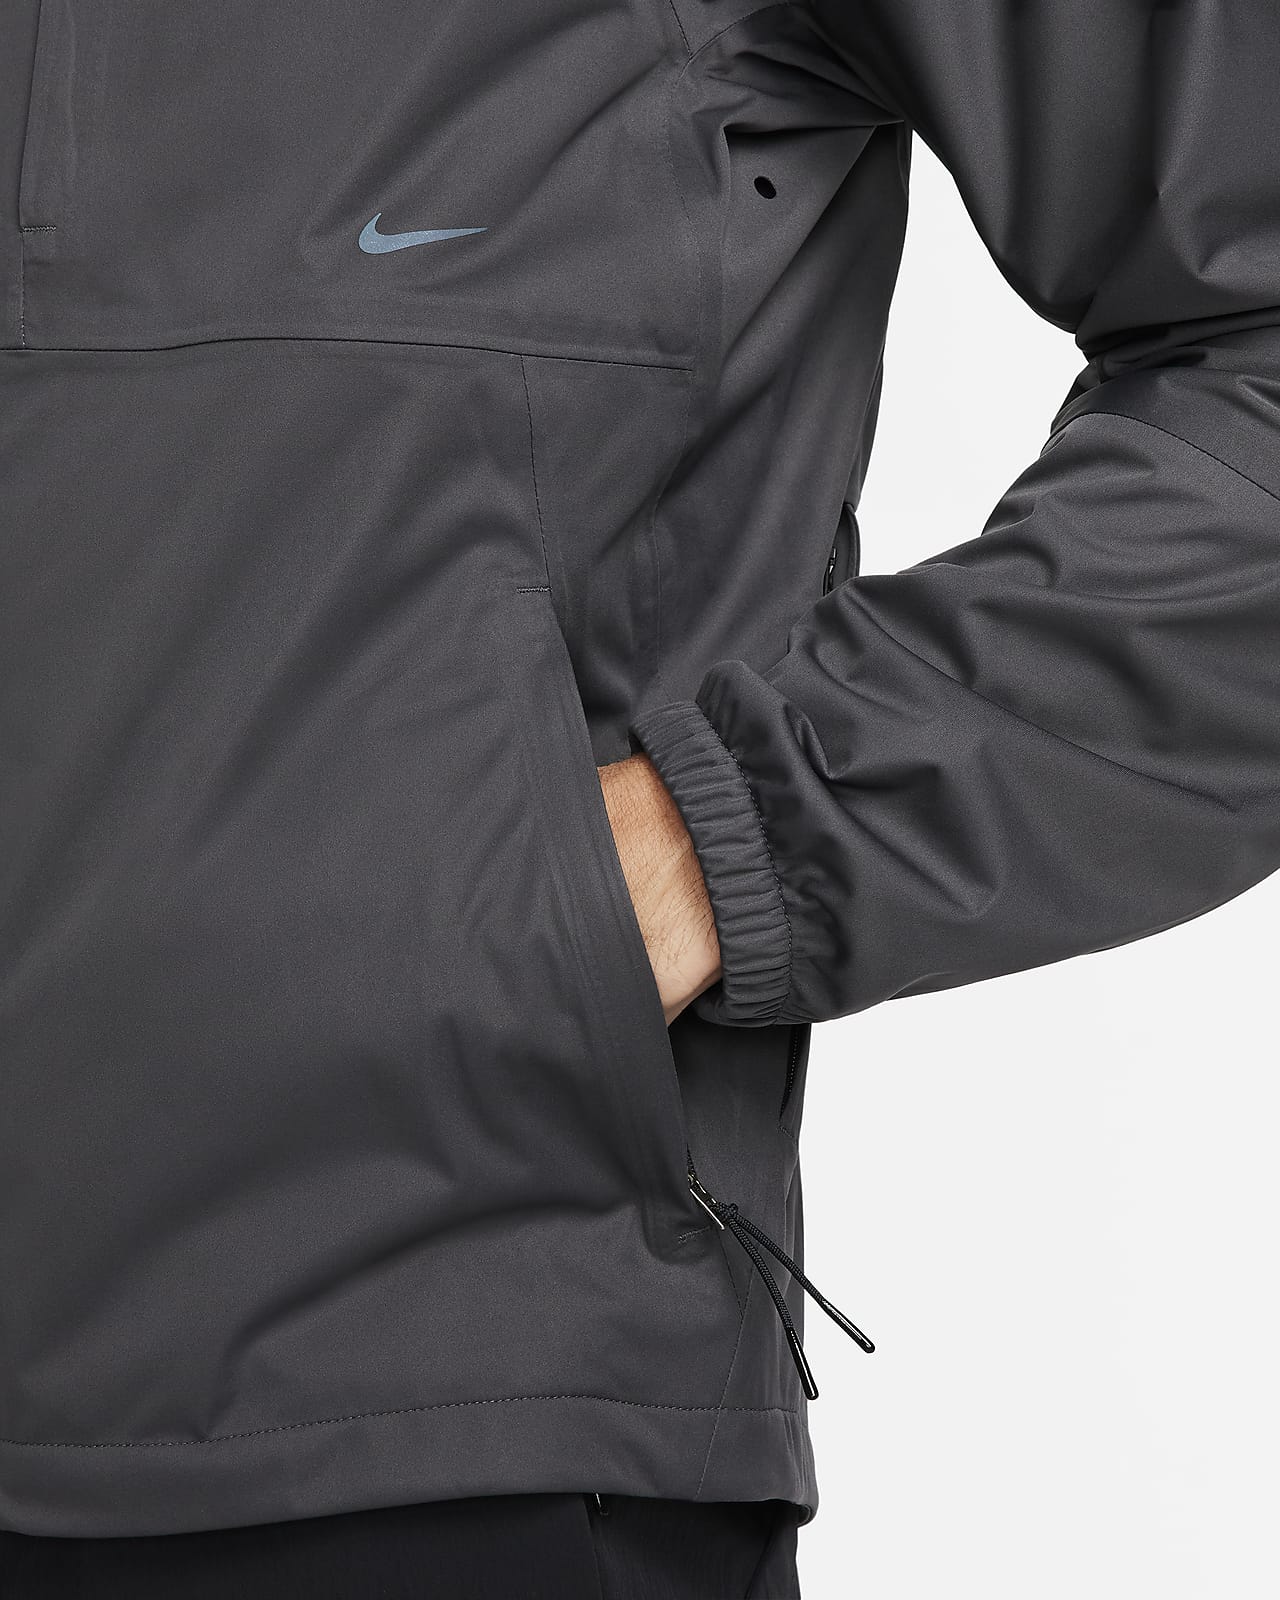 Nike Storm-FIT ADV APS Men's Versatile Jacket